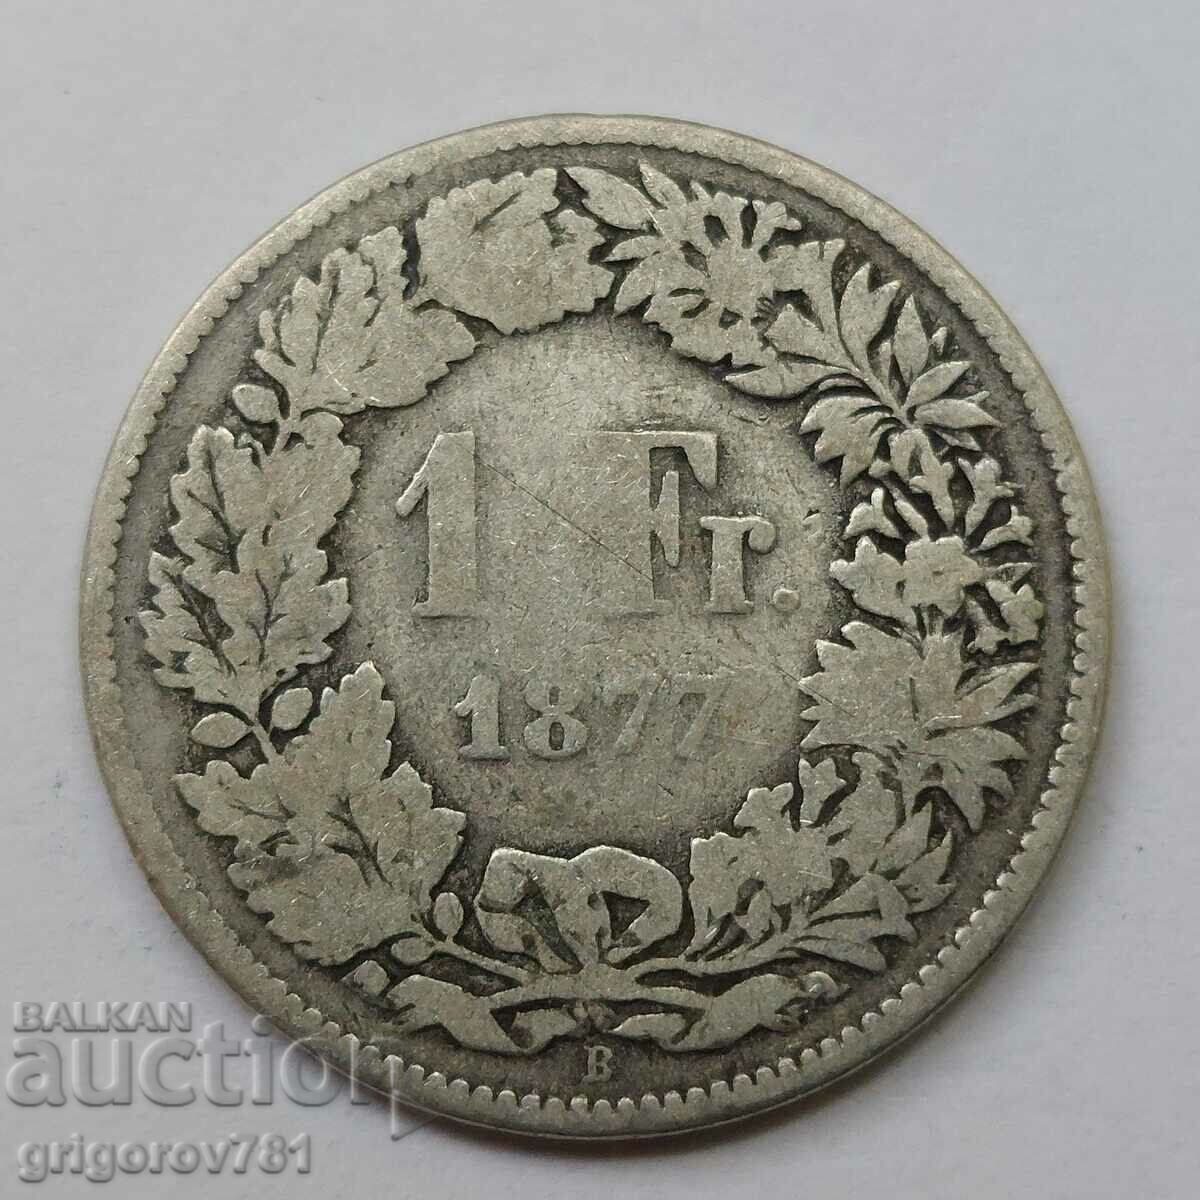 Ασημένιο 1 Φράγκο Ελβετία 1877 Β - Ασημένιο νόμισμα #3